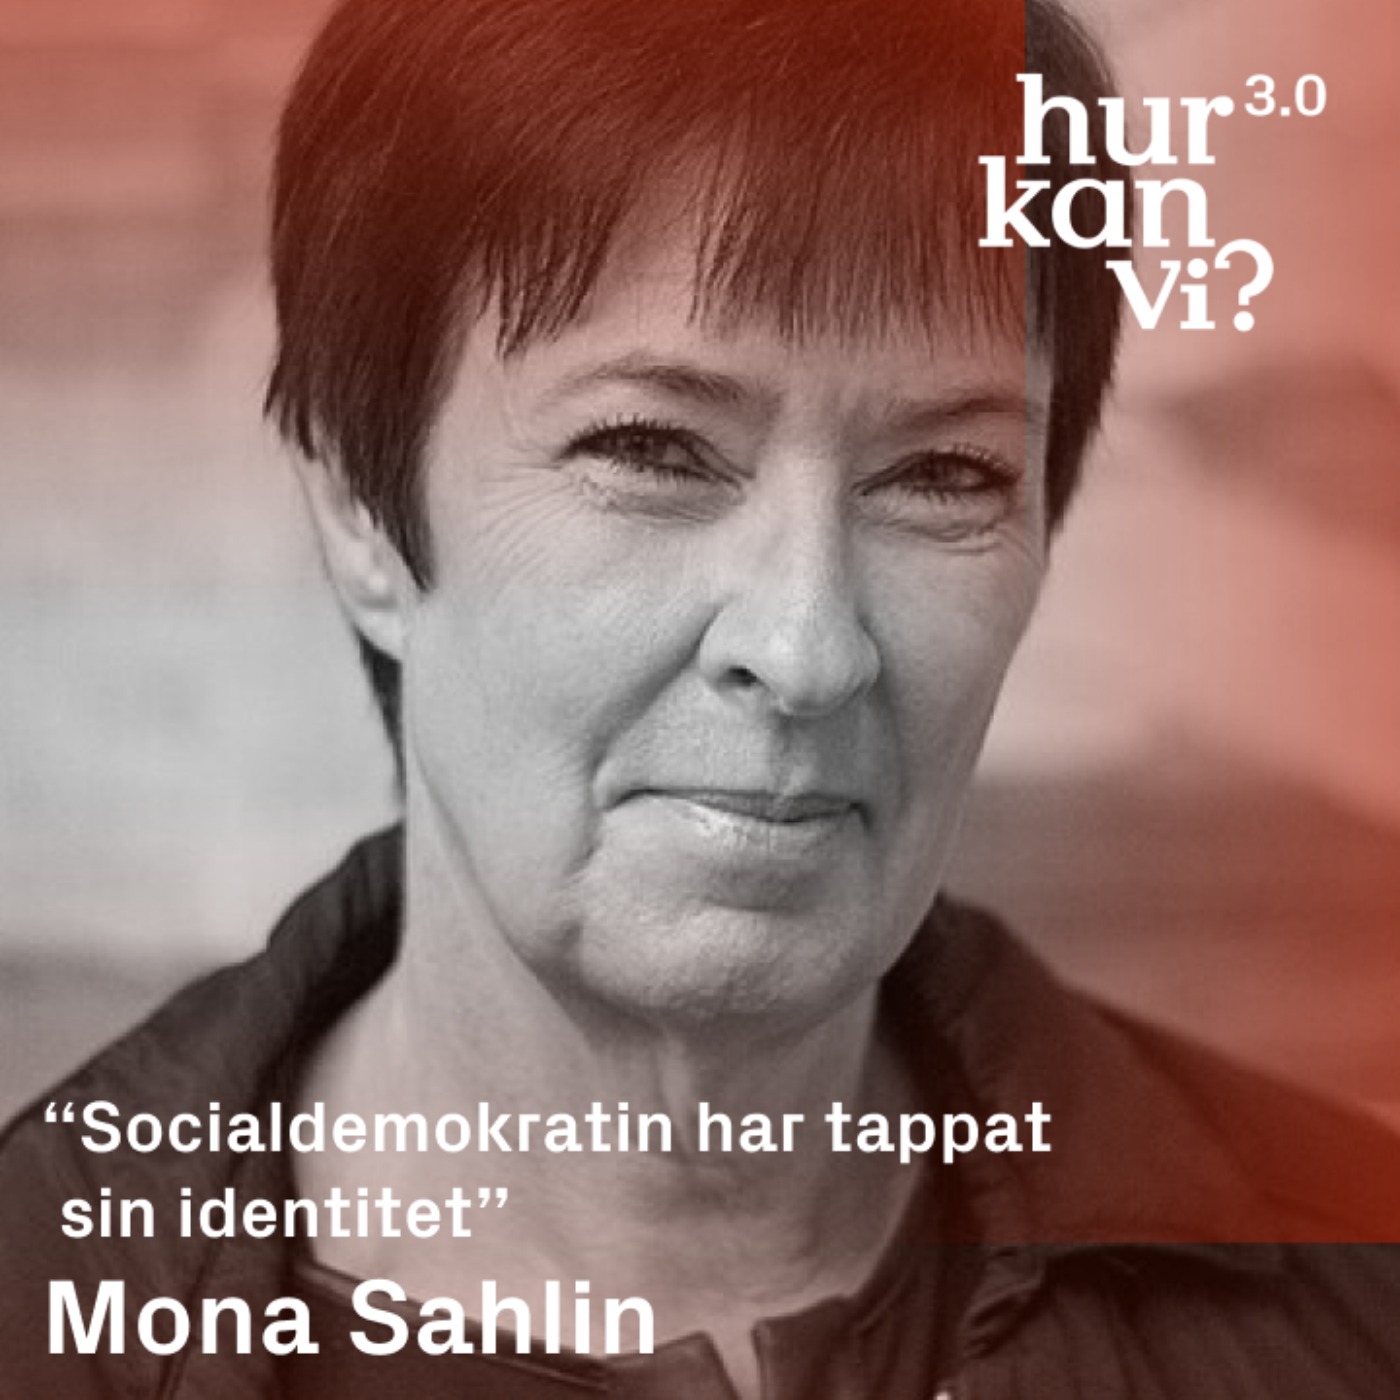 Mona Sahlin - “Socialdemokratin har tappat sin identitet”